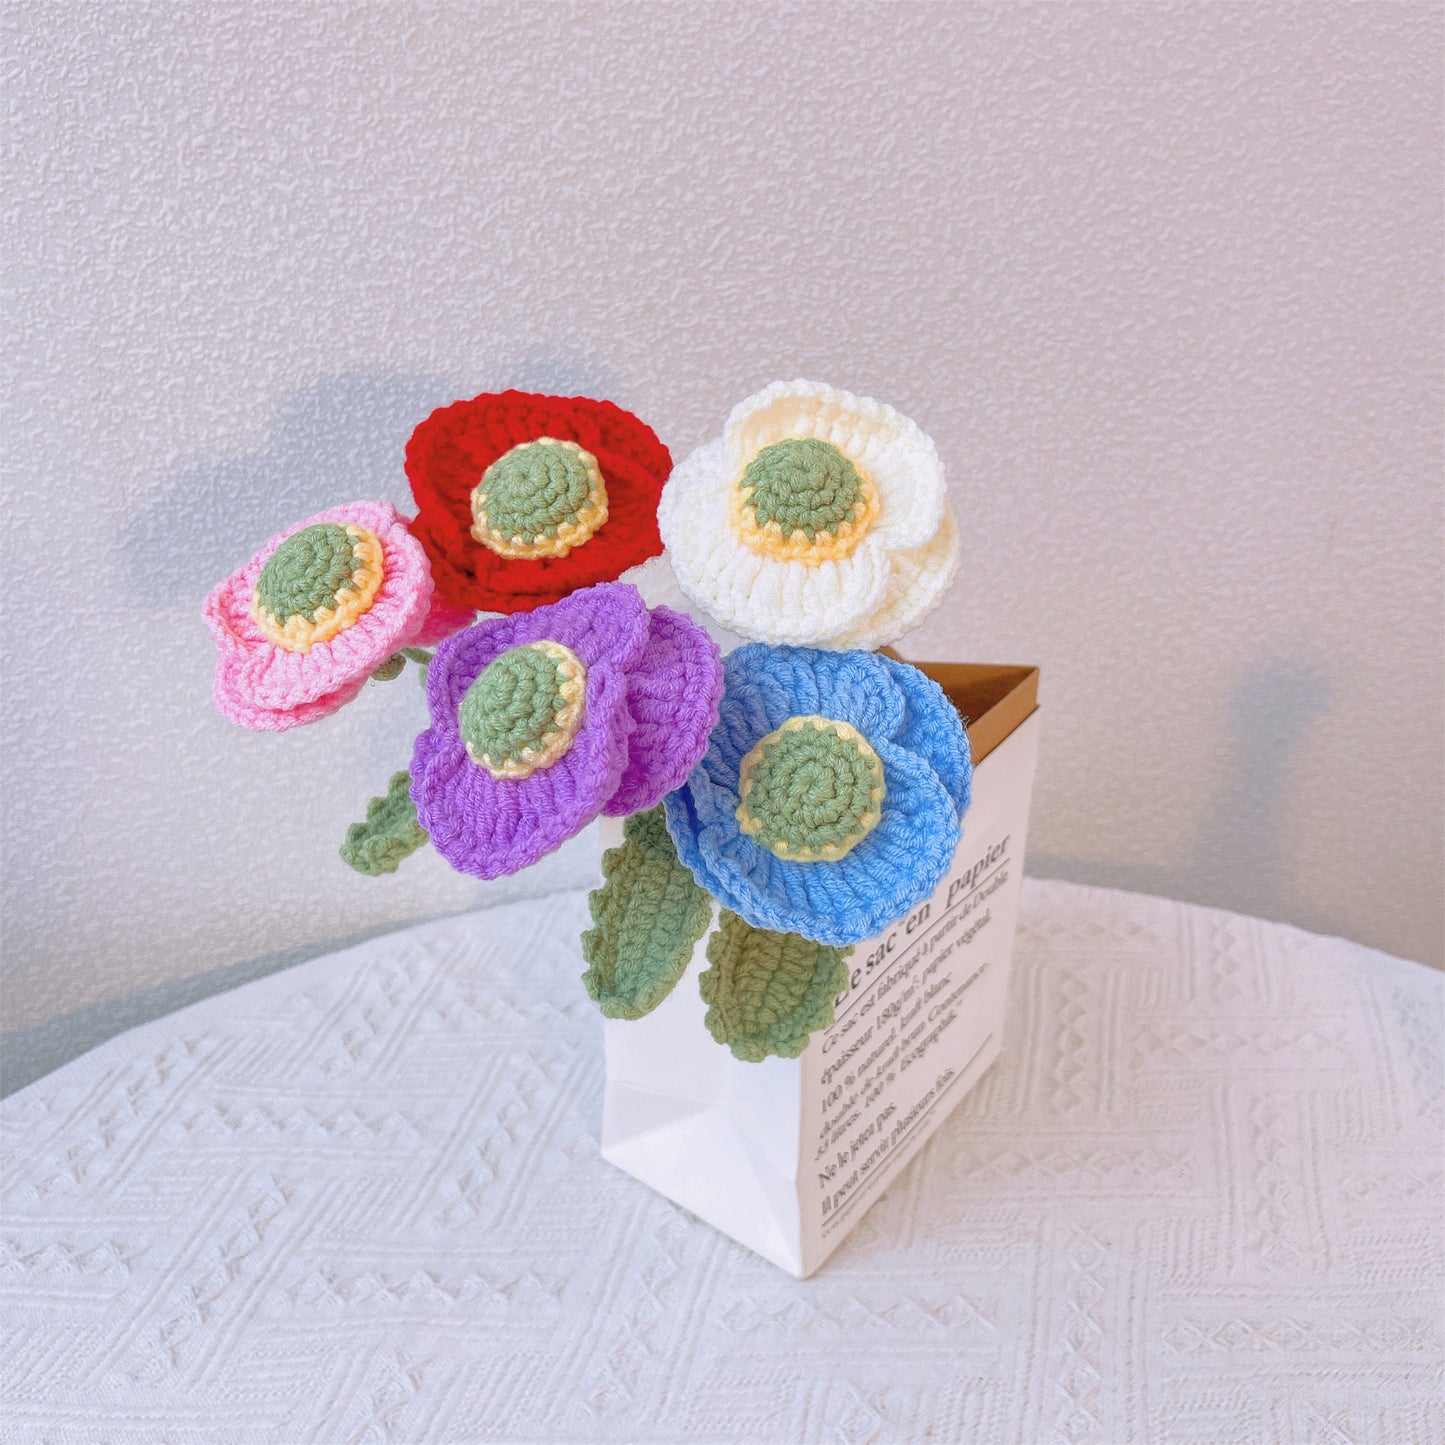 Poppy Passion : Piquet Coquelicot au Crochet fabriqué à la Main pour une décoration de Jardin audacieuse